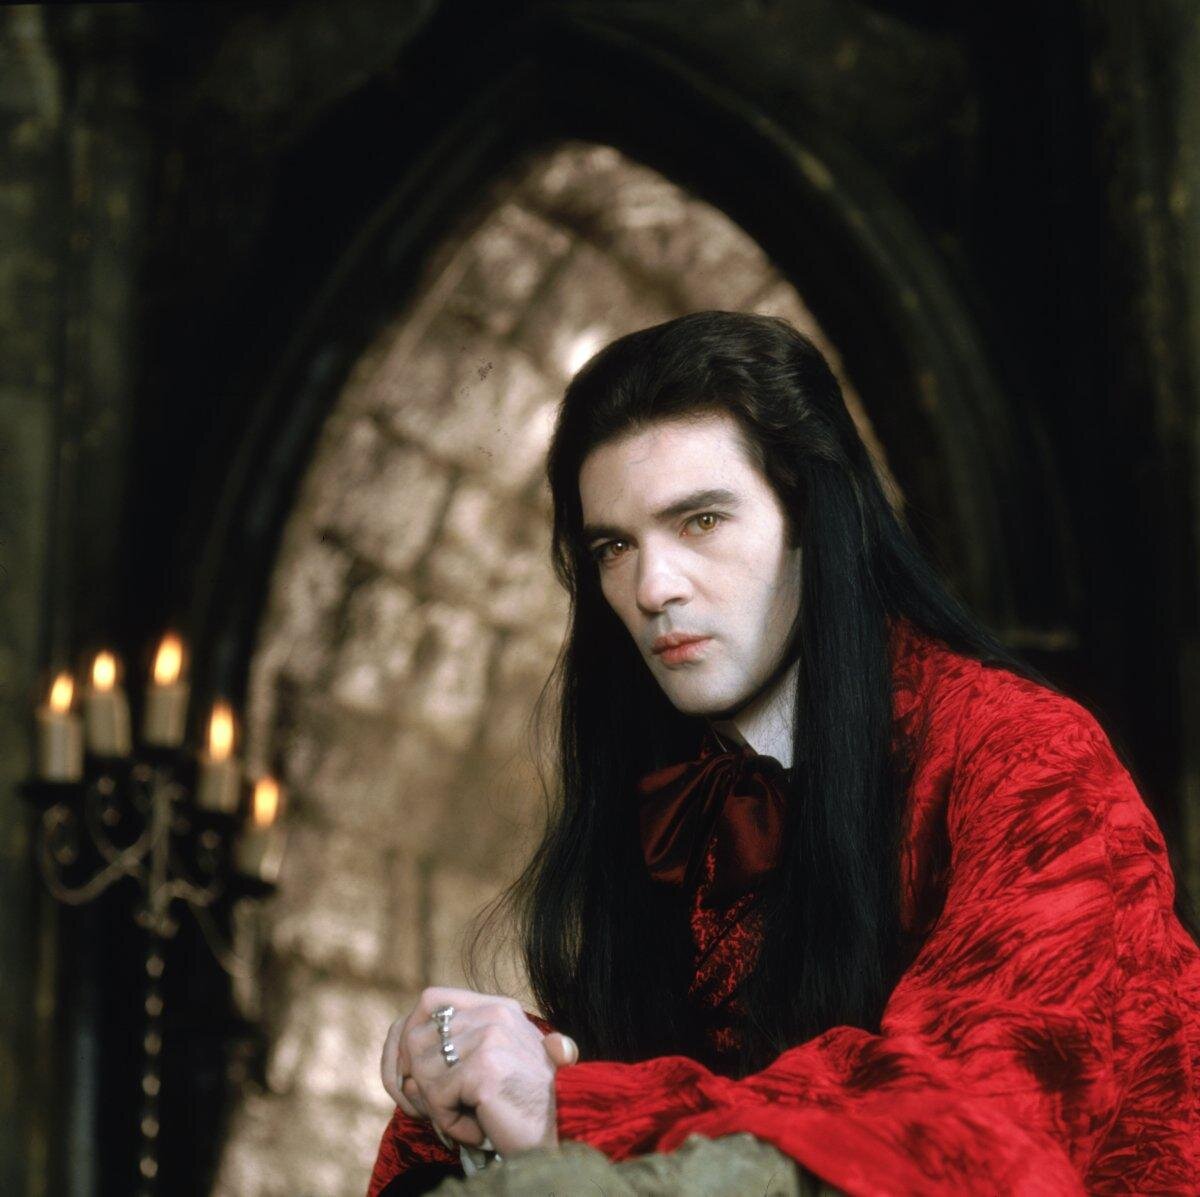 Пон дю лак. Антонио Бандерас интервью с вампиром. Интервью с вампиром 1994 Луи де Пон дю.